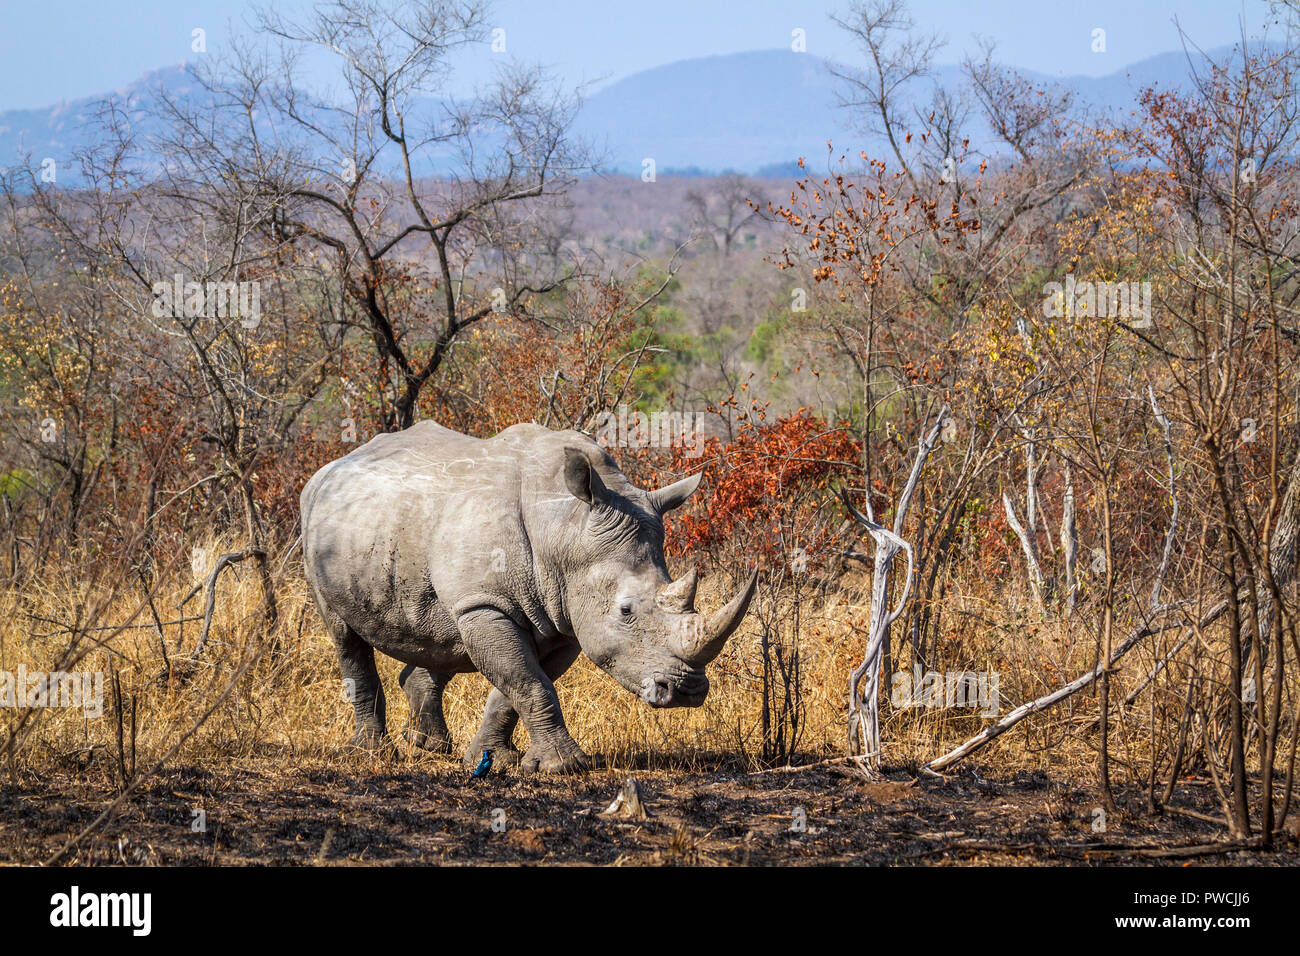 Rhinocéros blanc du sud dans le parc national Kruger, Afrique du Sud ; Espèce Ceratotherium simum simum famille des Rhinocerotidae Banque D'Images